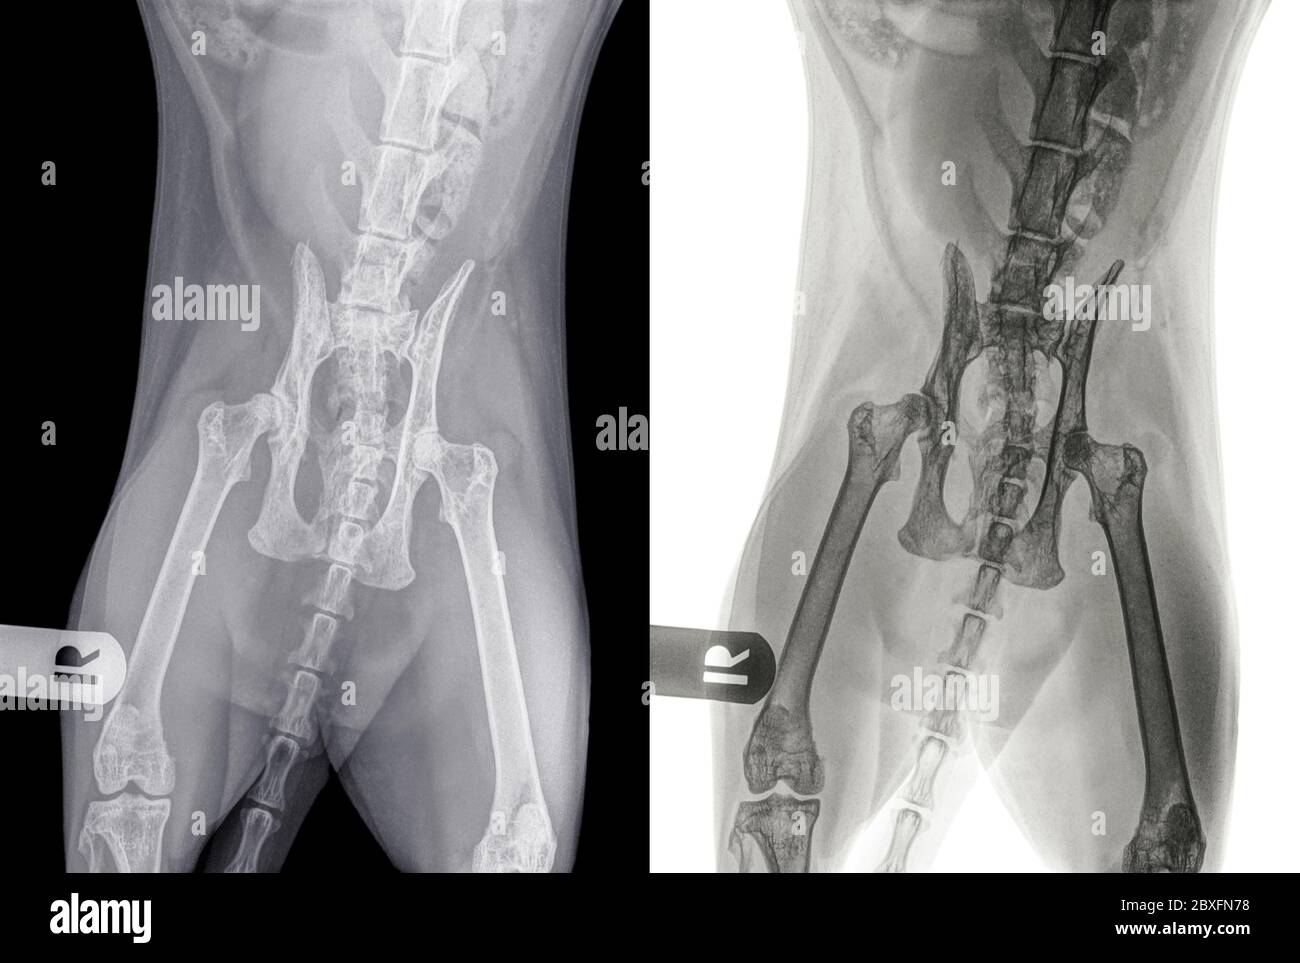 Digitale Röntgenaufnahme einer Katze mit Hüftdysplasie im linken Hüftgelenk. Ansicht von Ventro-Dorsal. Der Buchstabe R zeigt die rechte Seite der Katze an. Stockfoto